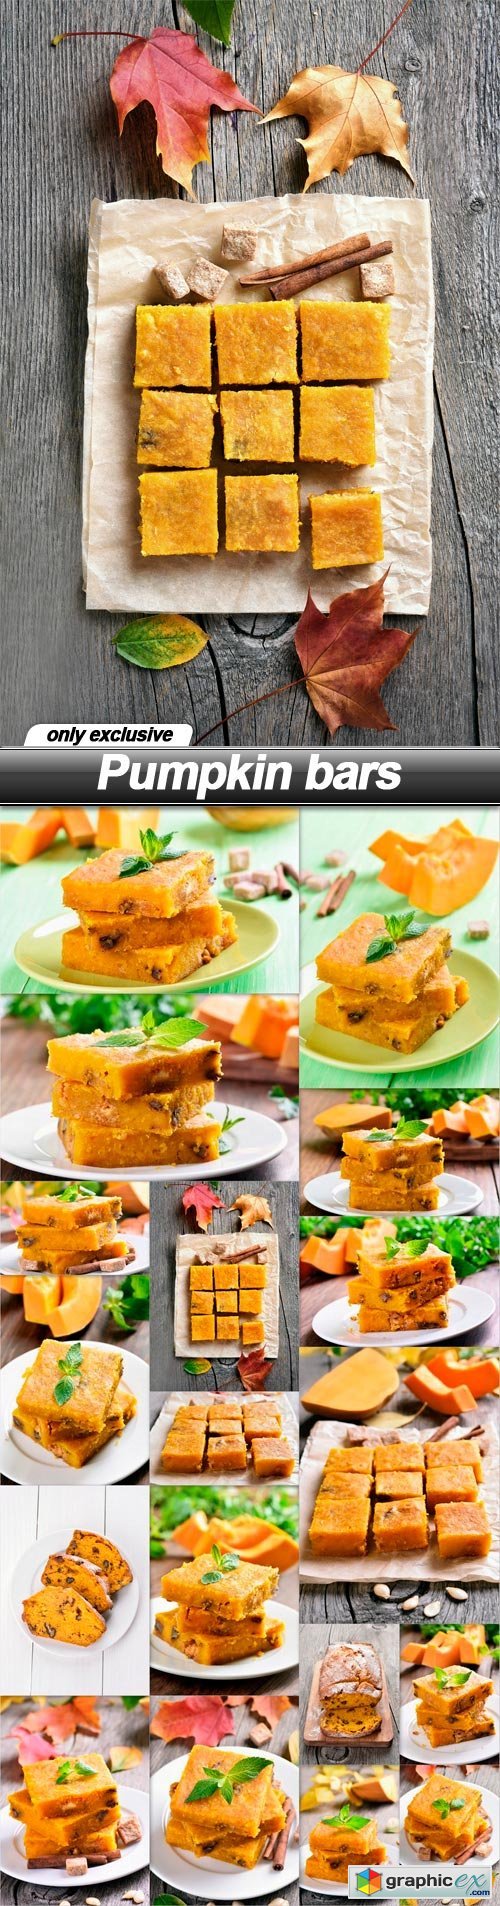 Pumpkin bars - 18 UHQ JPEG